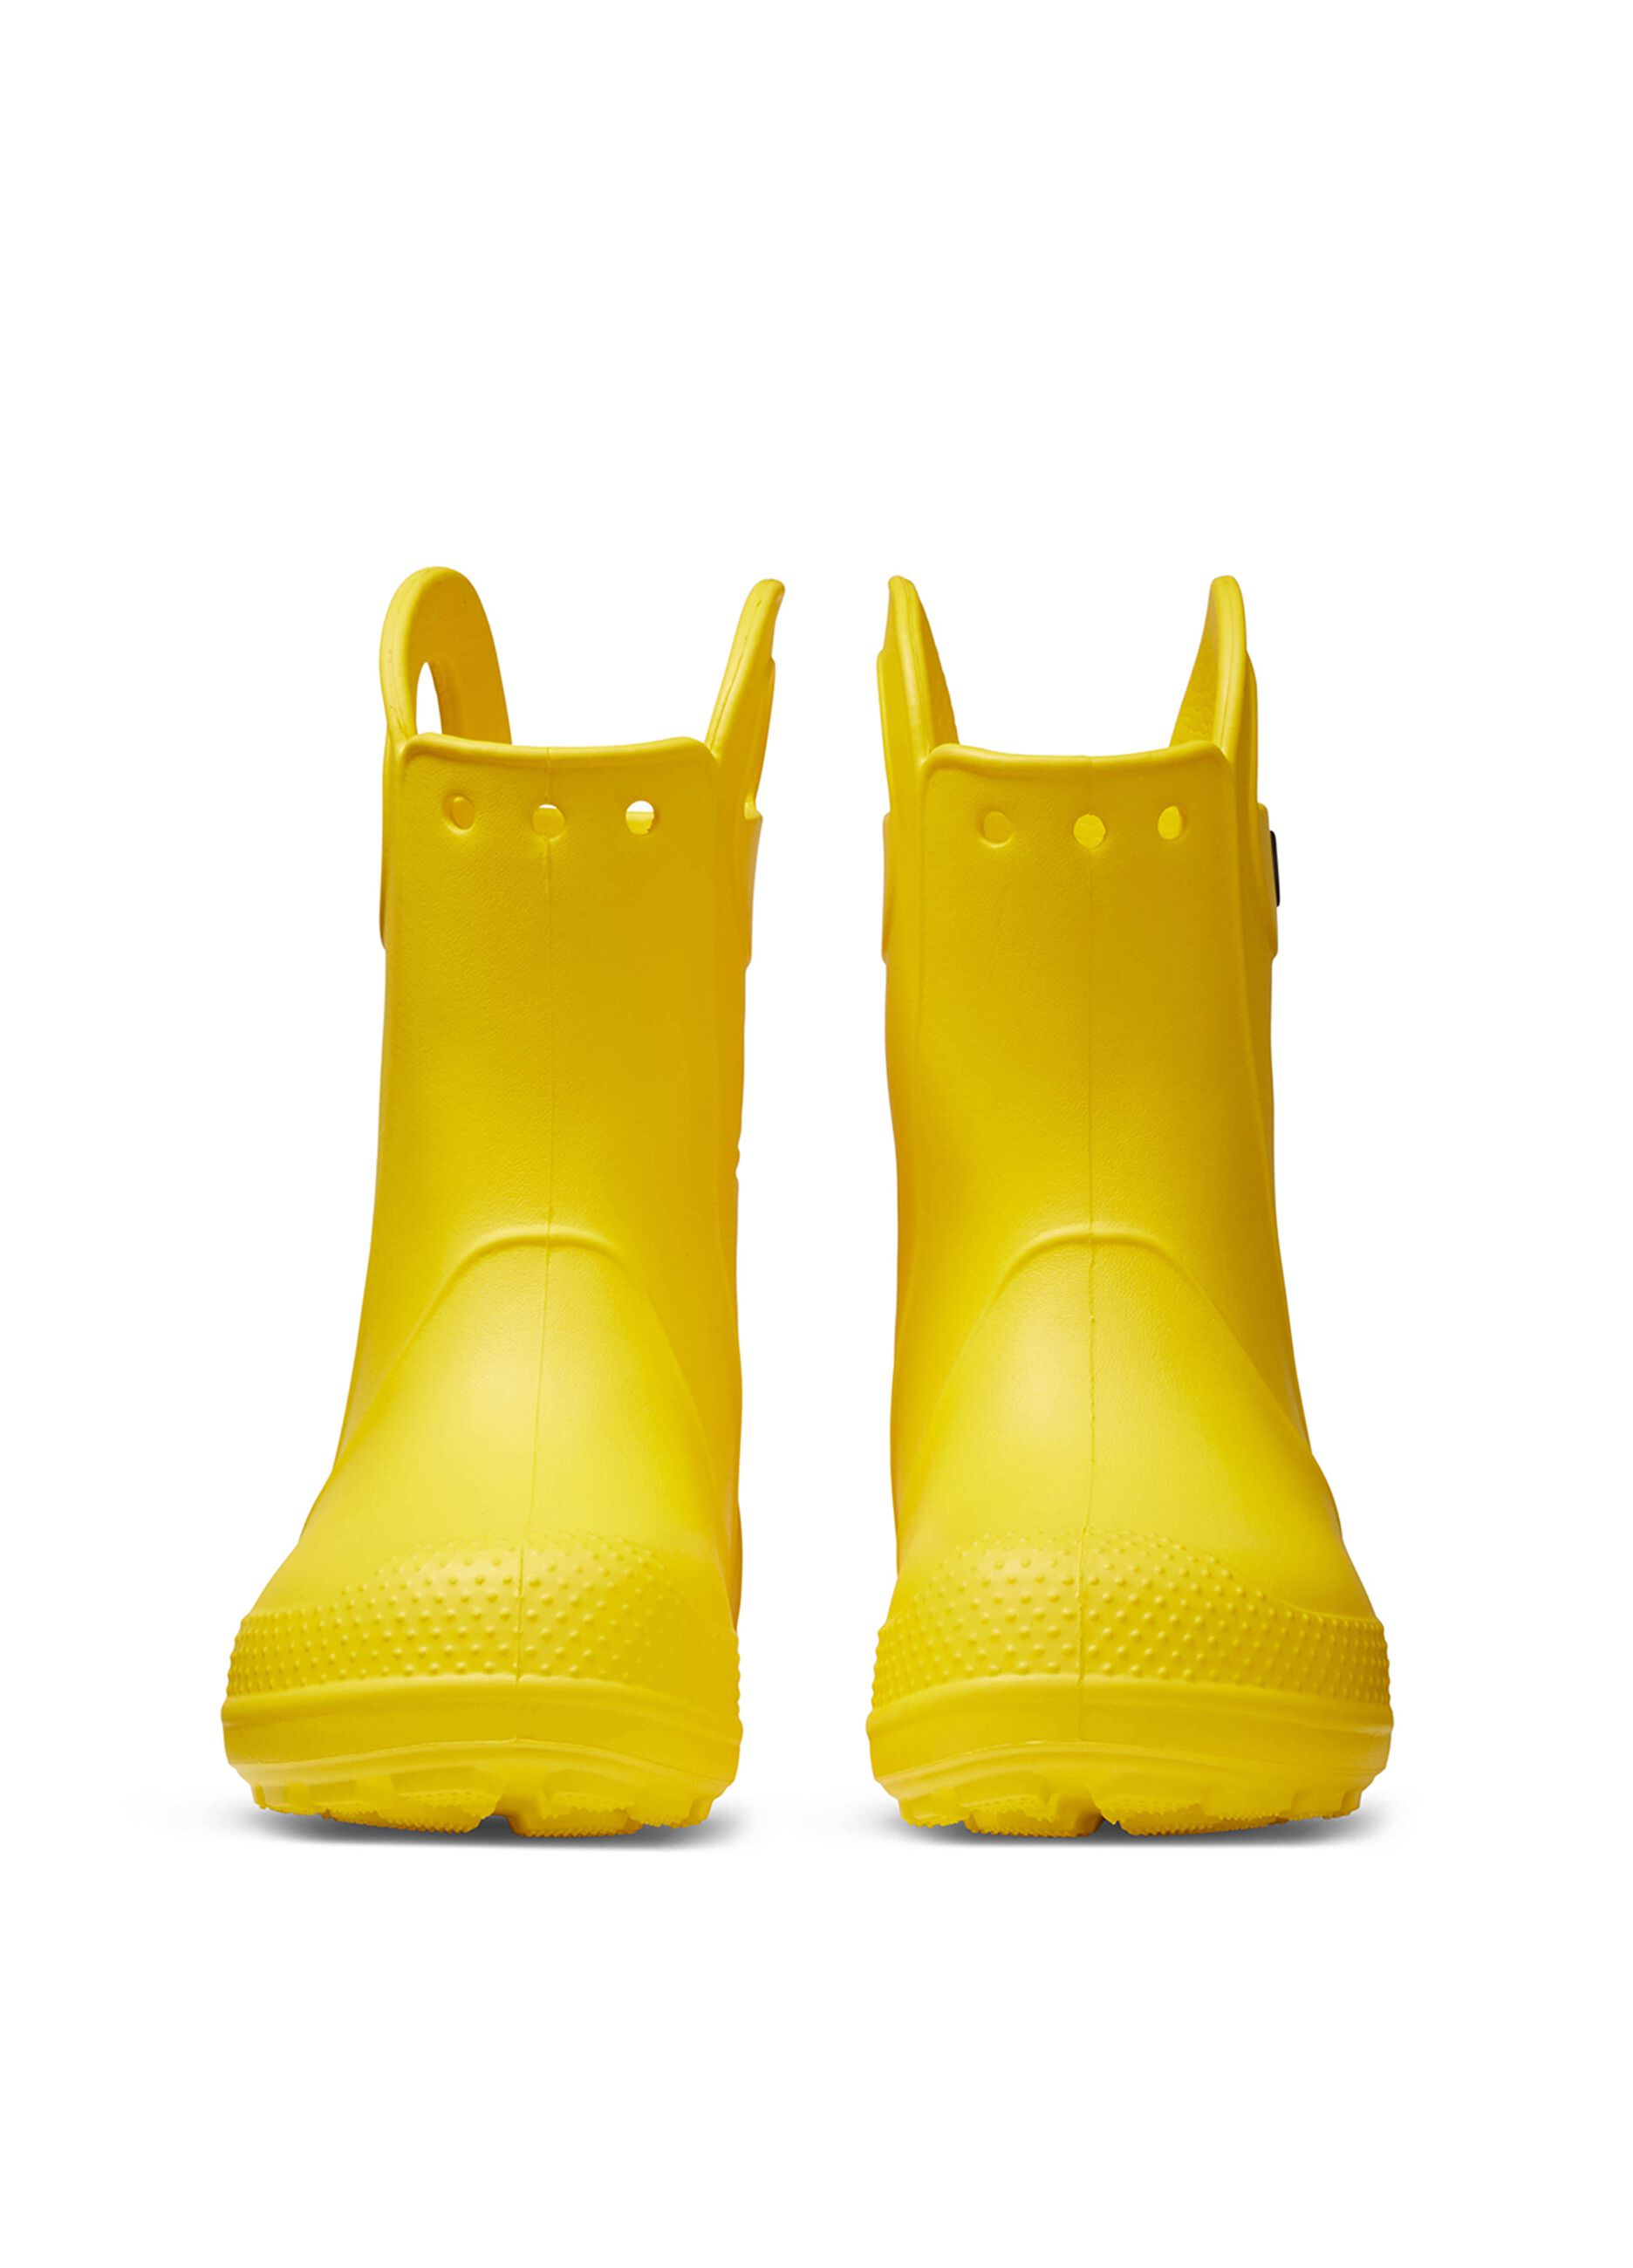 Crocs rain boot